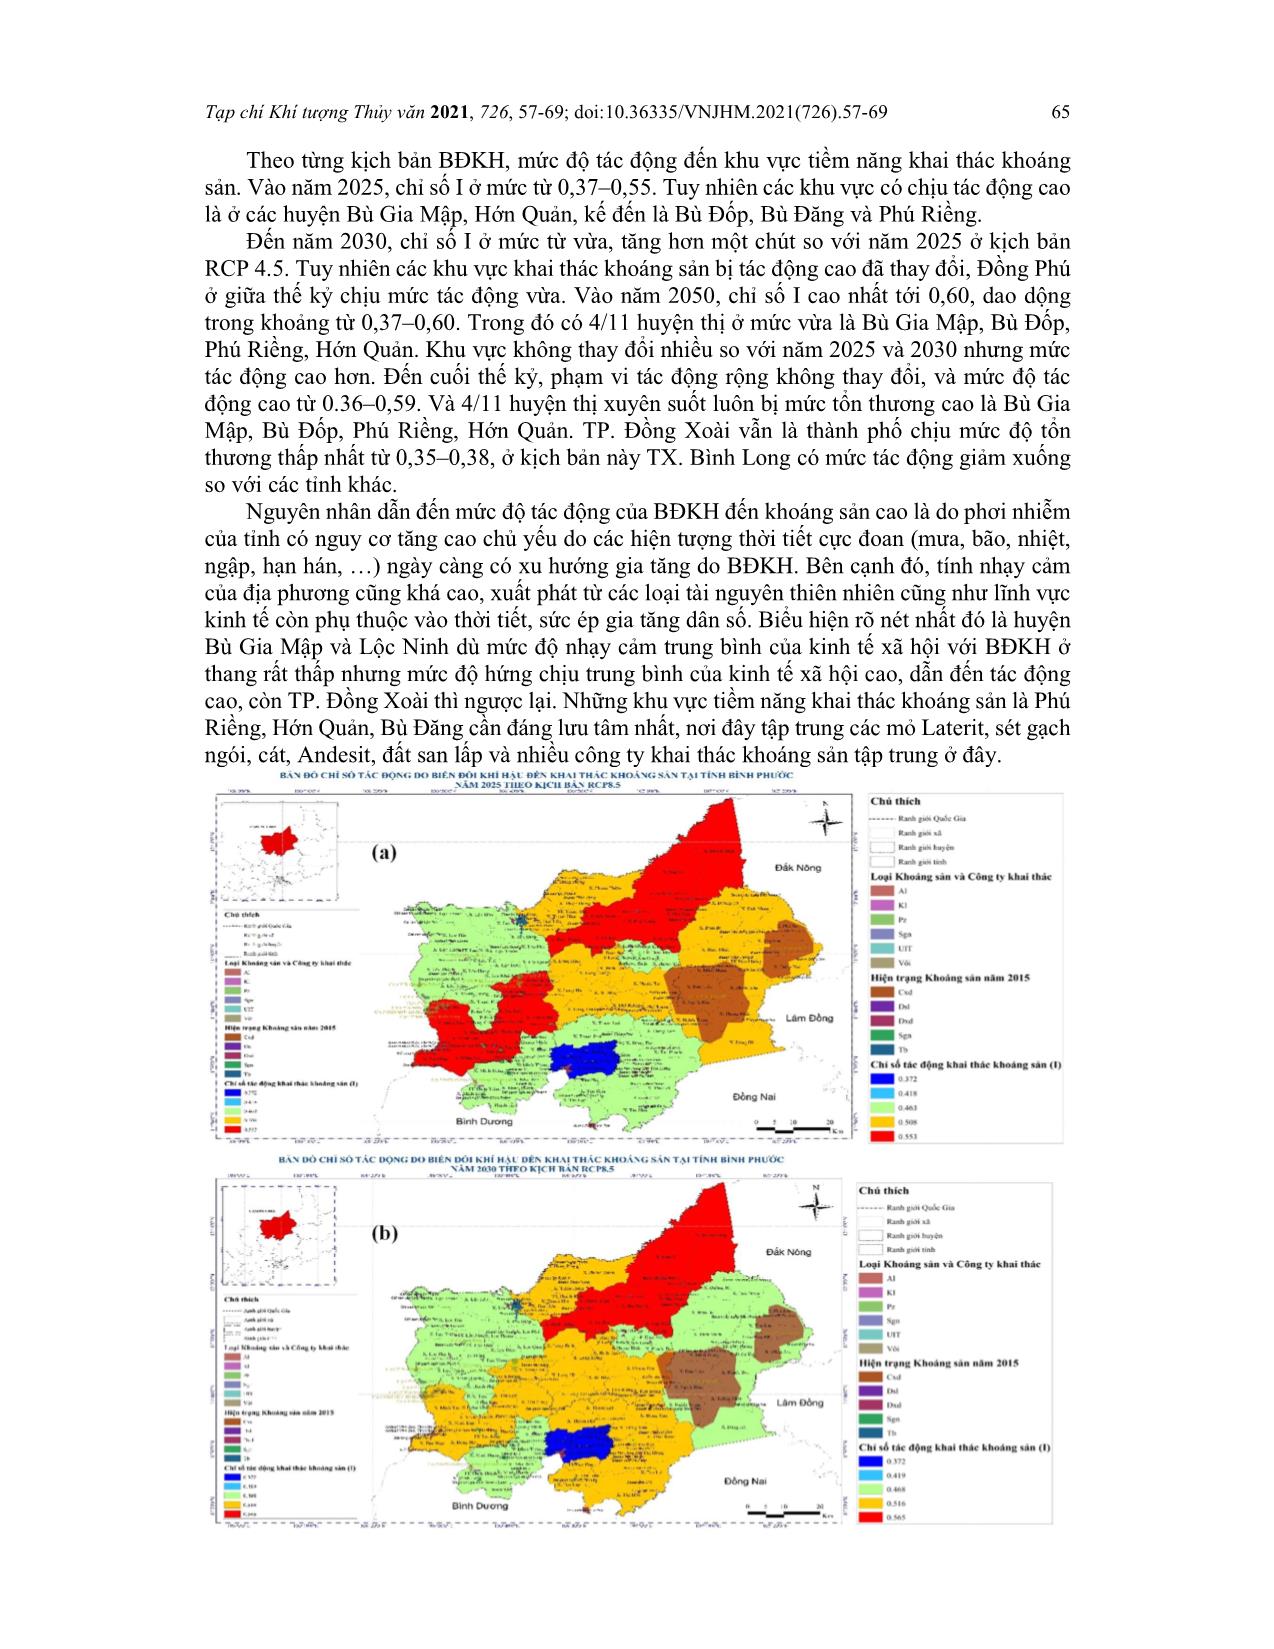 Đánh giá tác động của biến đổi khí hậu đến tiềm năng khai thác khoáng sản tỉnh Bình Phước trang 9